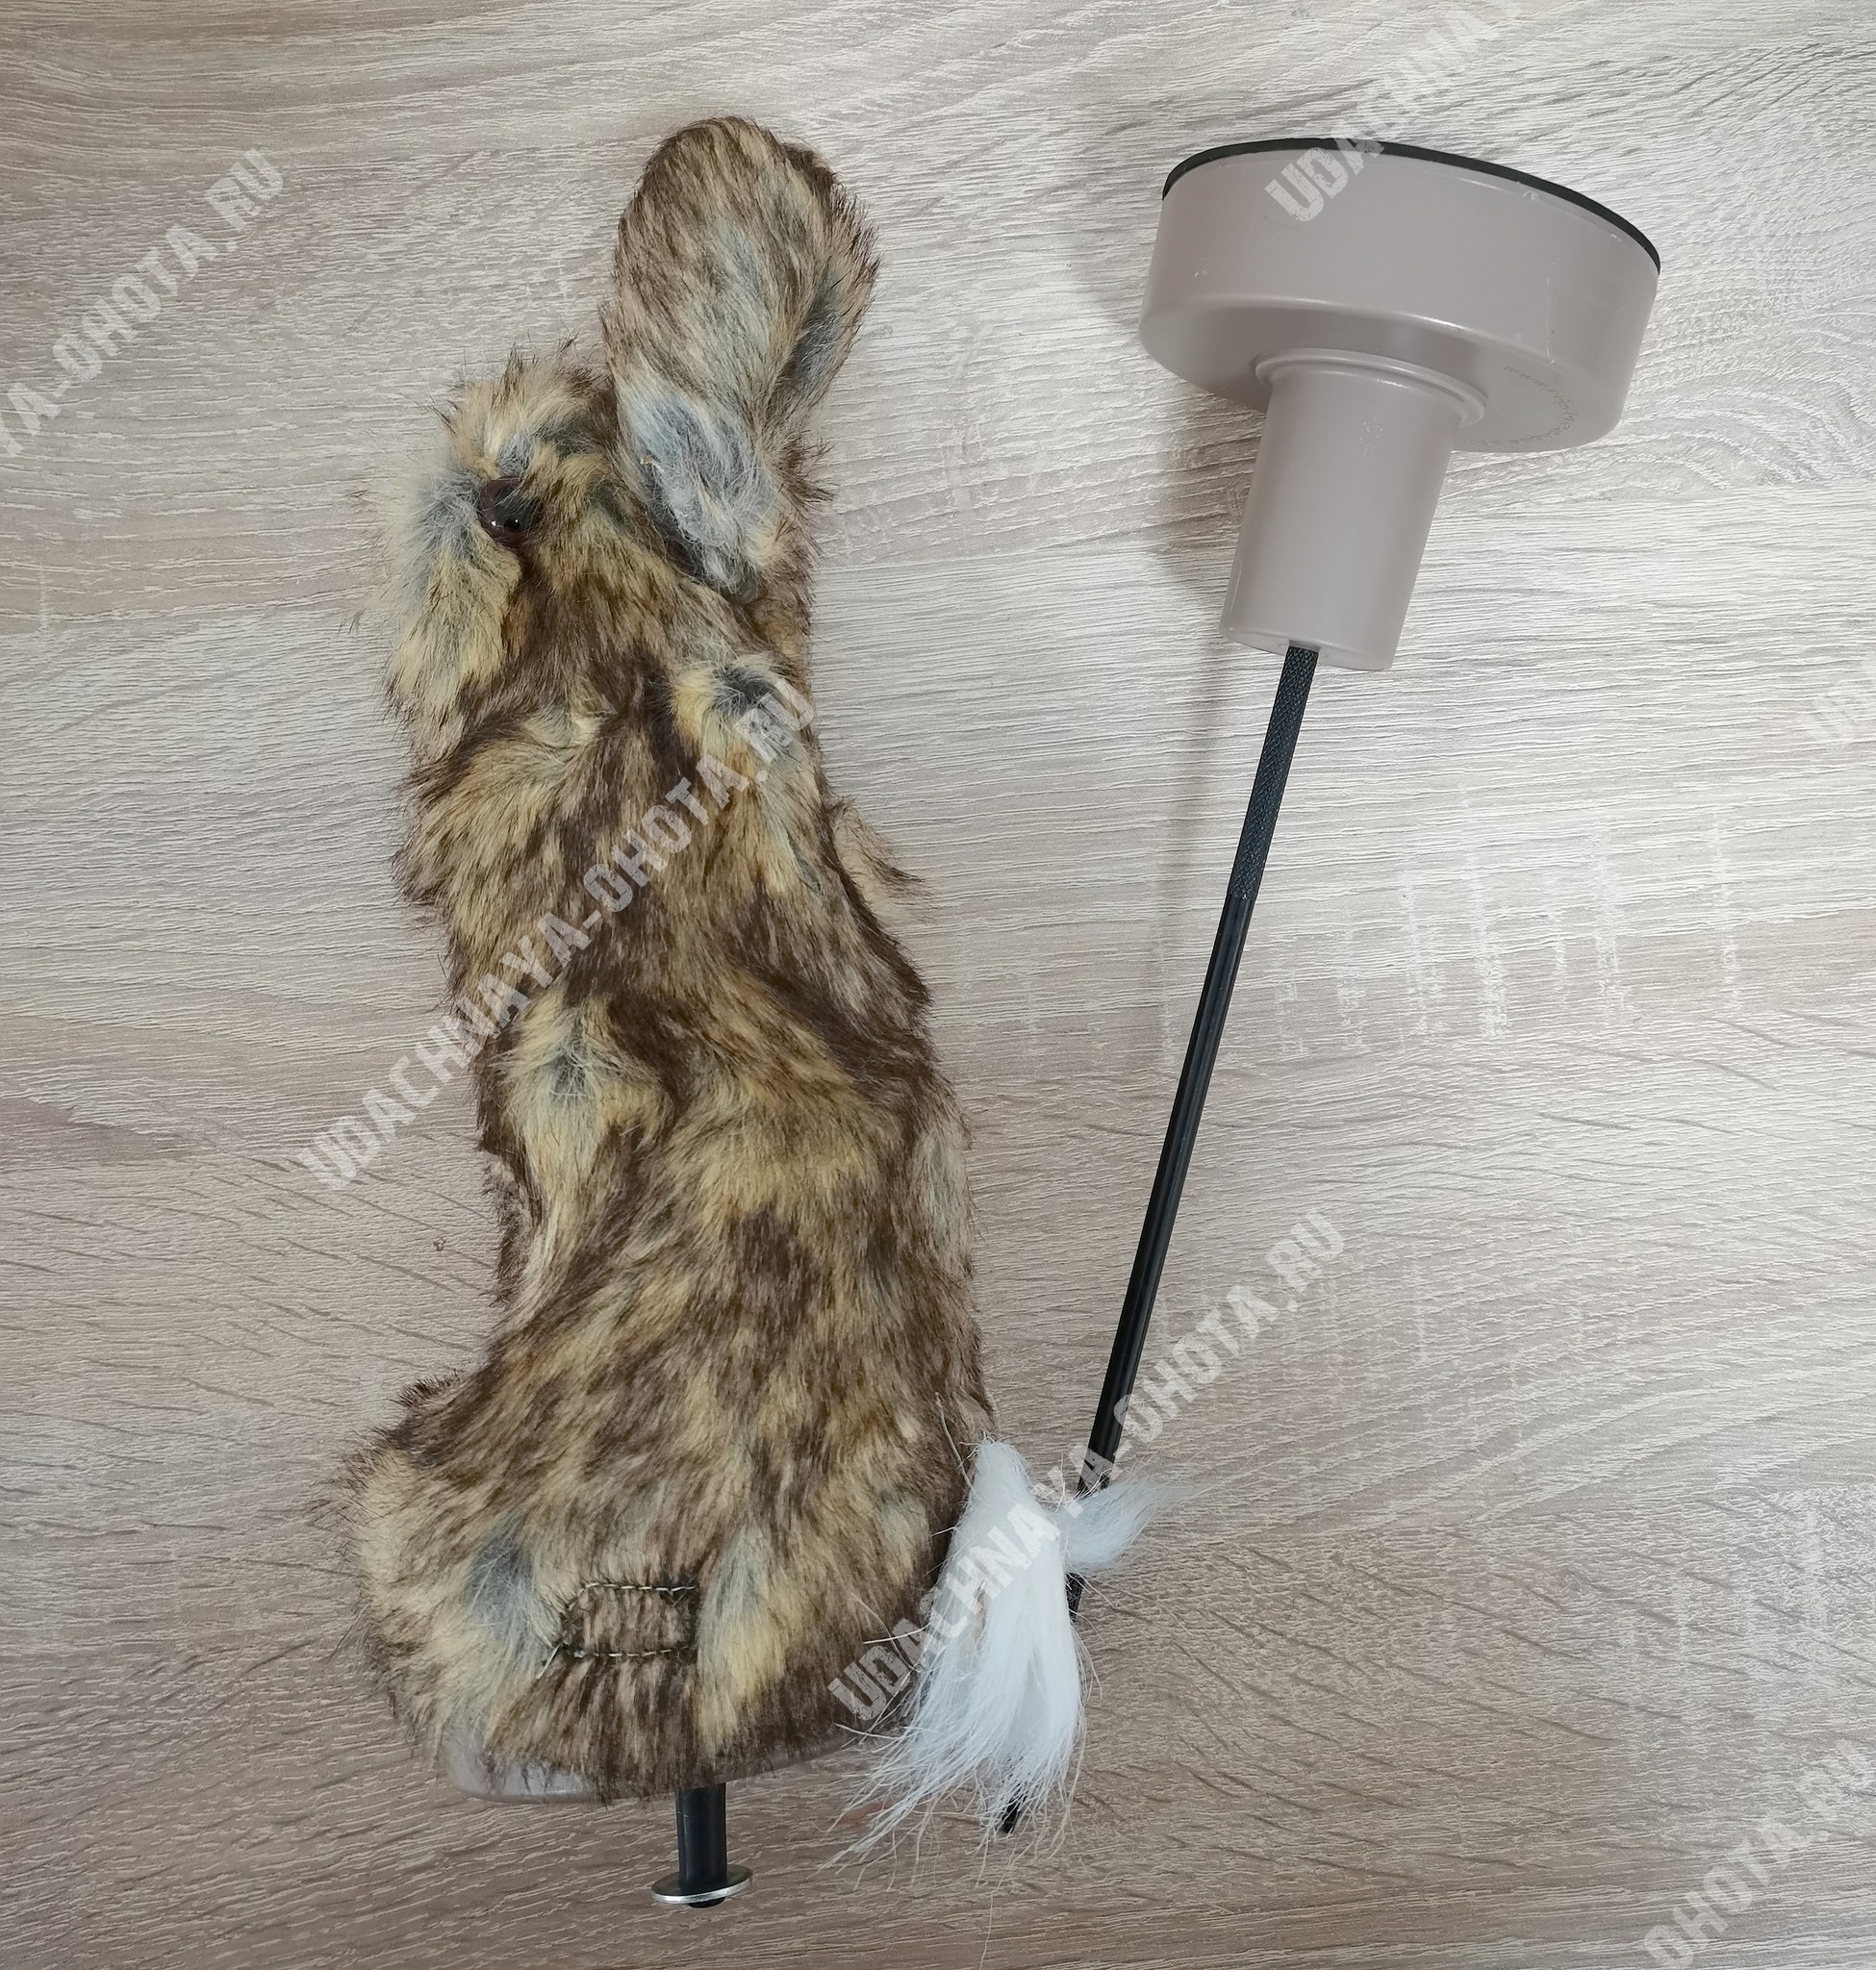 Манок на лису своими руками: писк мыши и раненый заяц